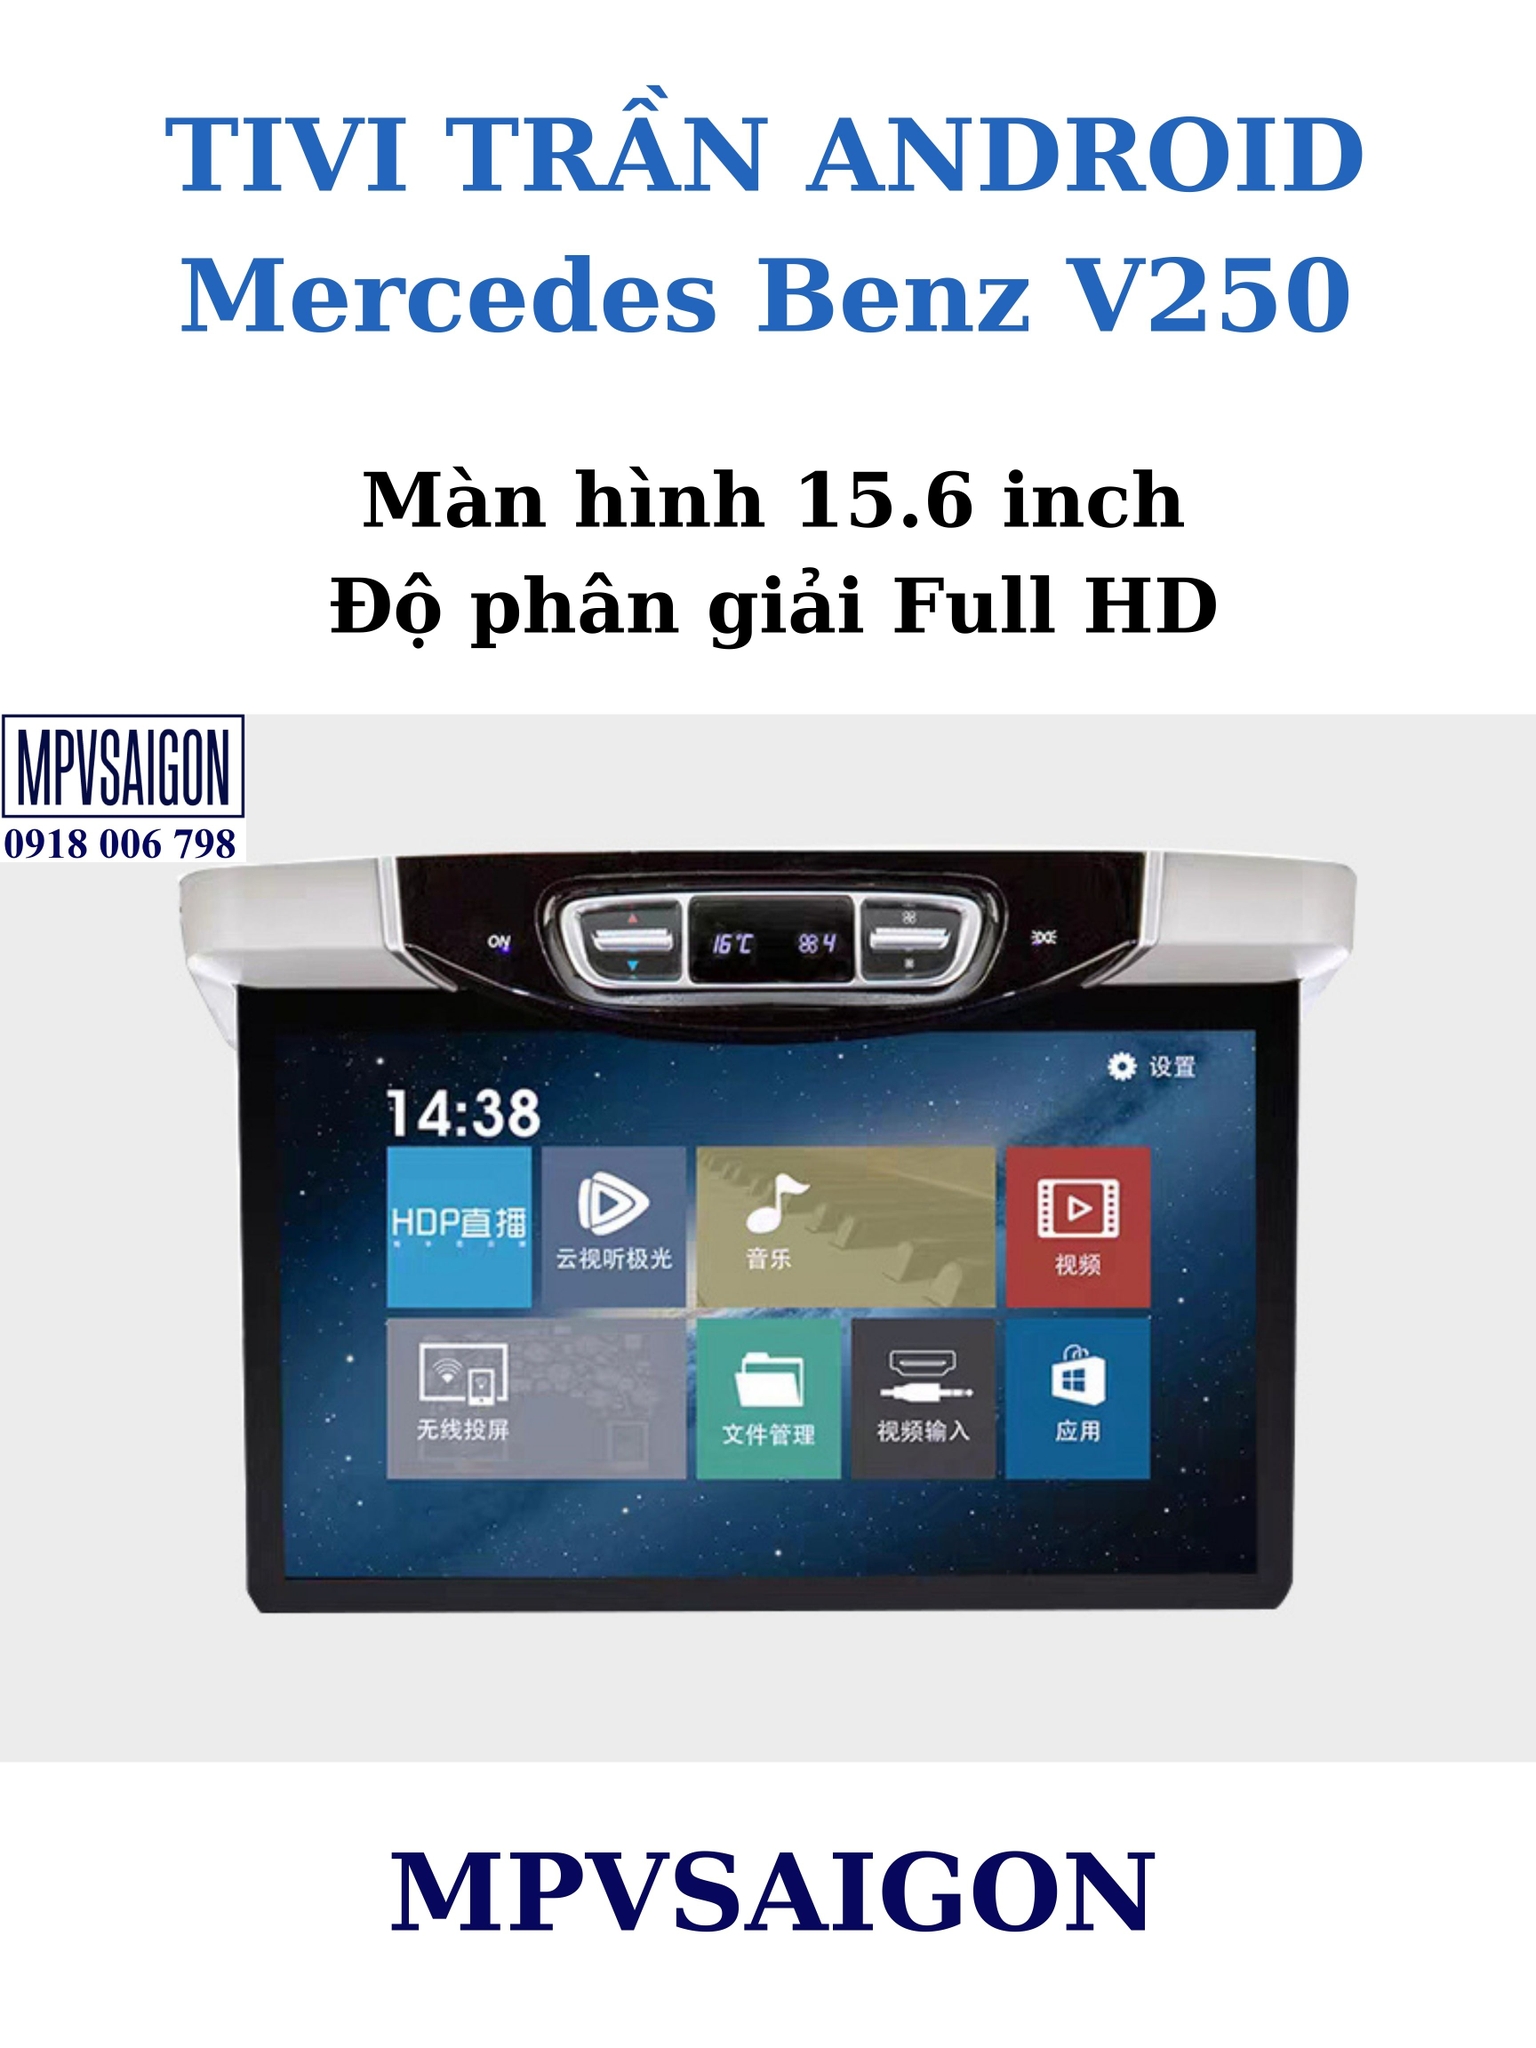 Tivi trần Android Mercedes Benz V250